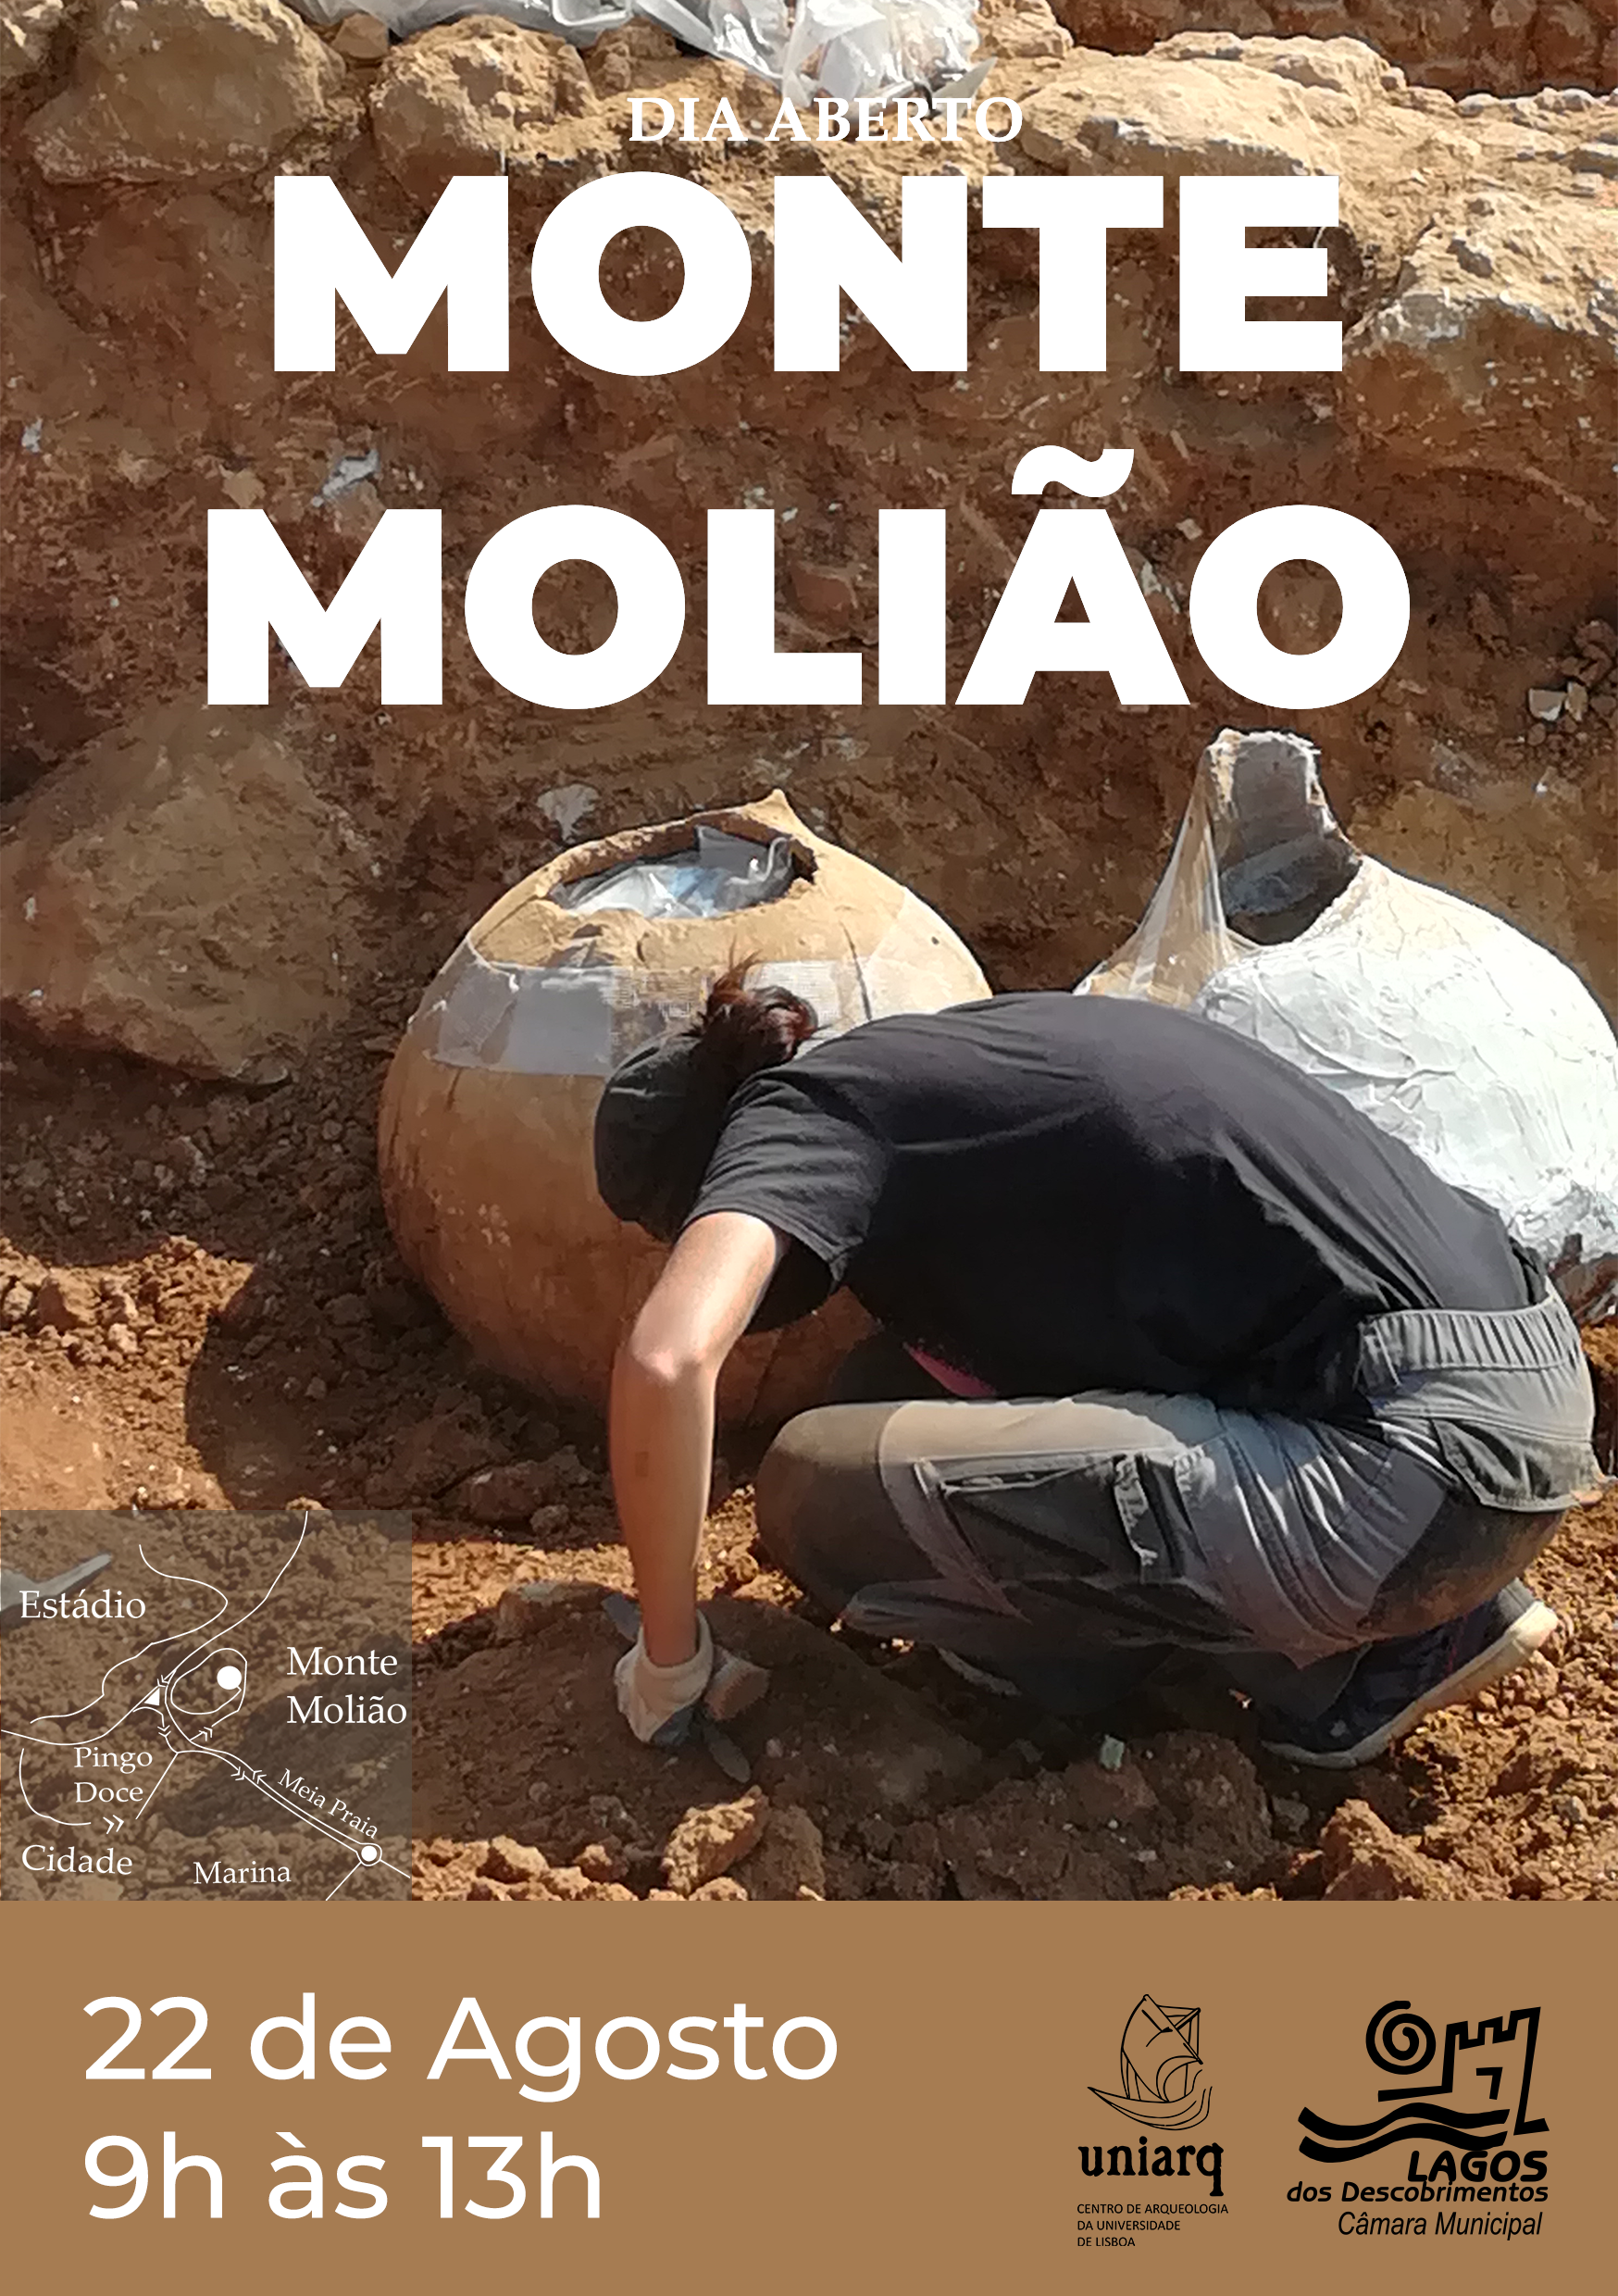 Escavações arqueológicas no Monte Molião terão Dia Aberto